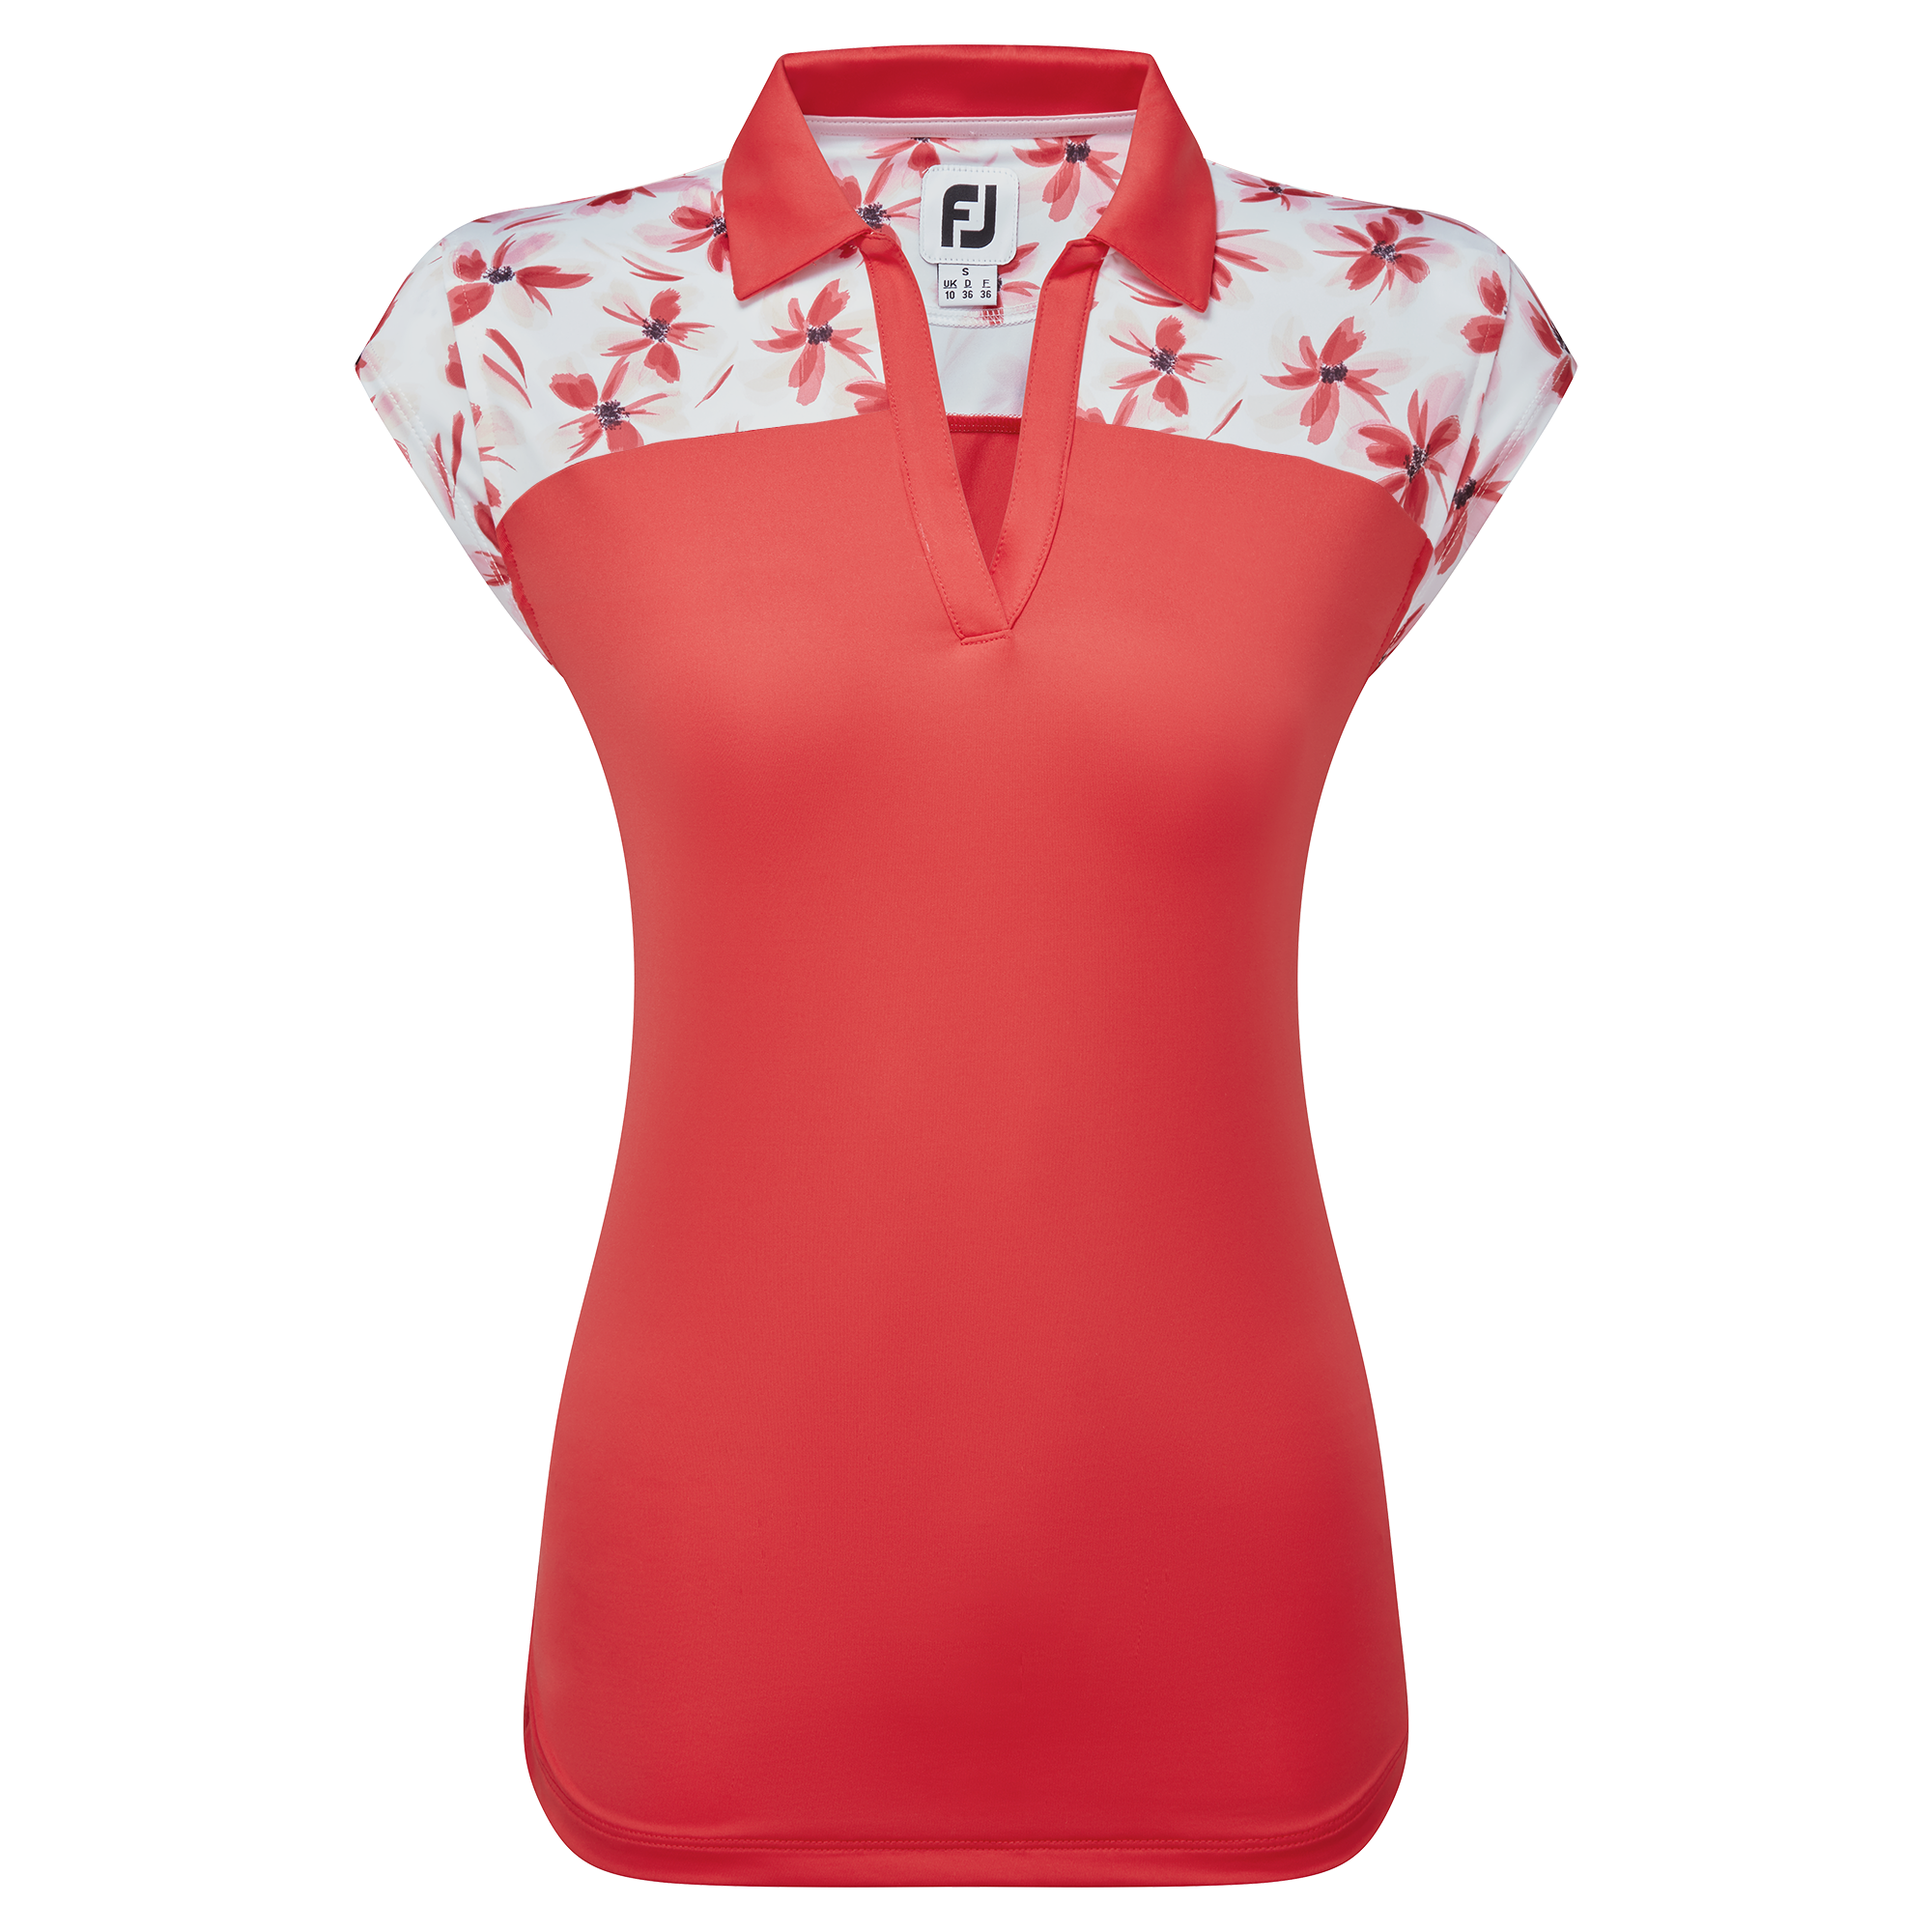 FootJoy Blocked Floral Print Lisle dámské golfové triko, červené, vel. S